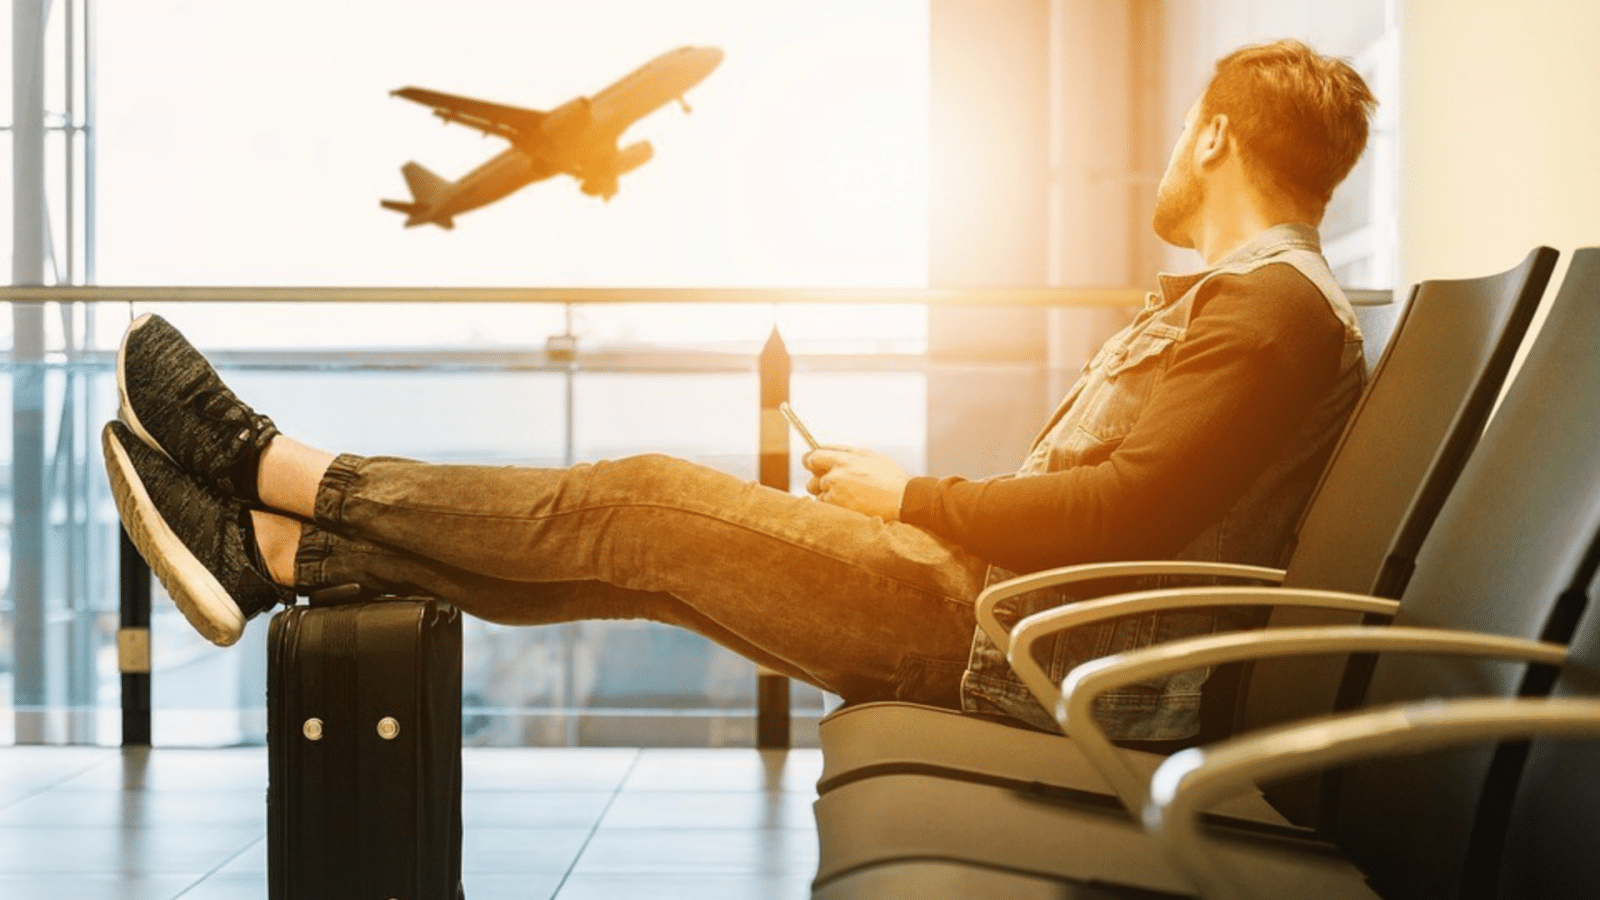 TikTok : 6 techniques astucieuses devenues virales pour vos voyages en avion !